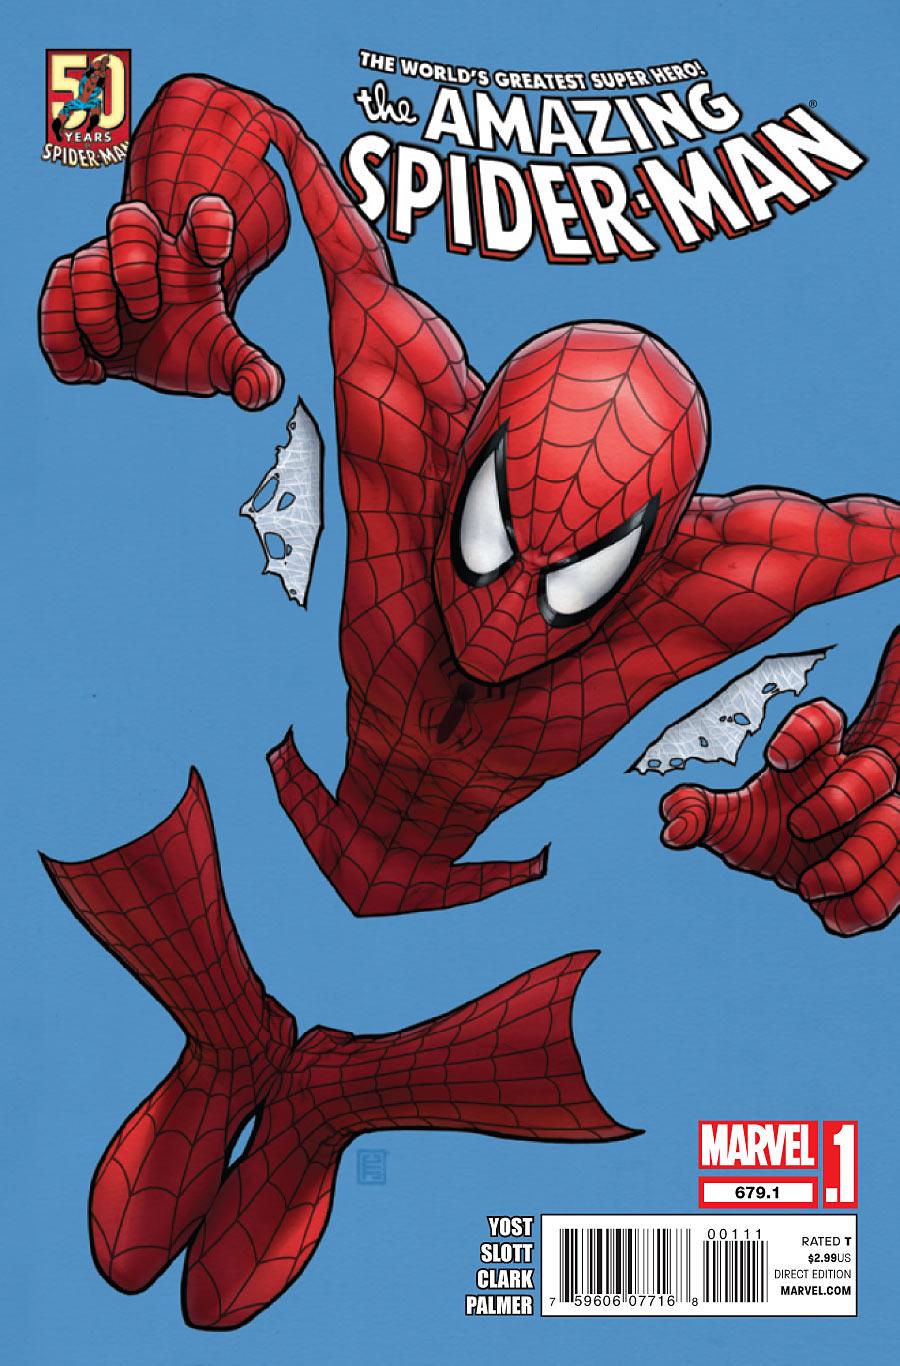 Amazing Spider-Man Vol. 1 #679.1